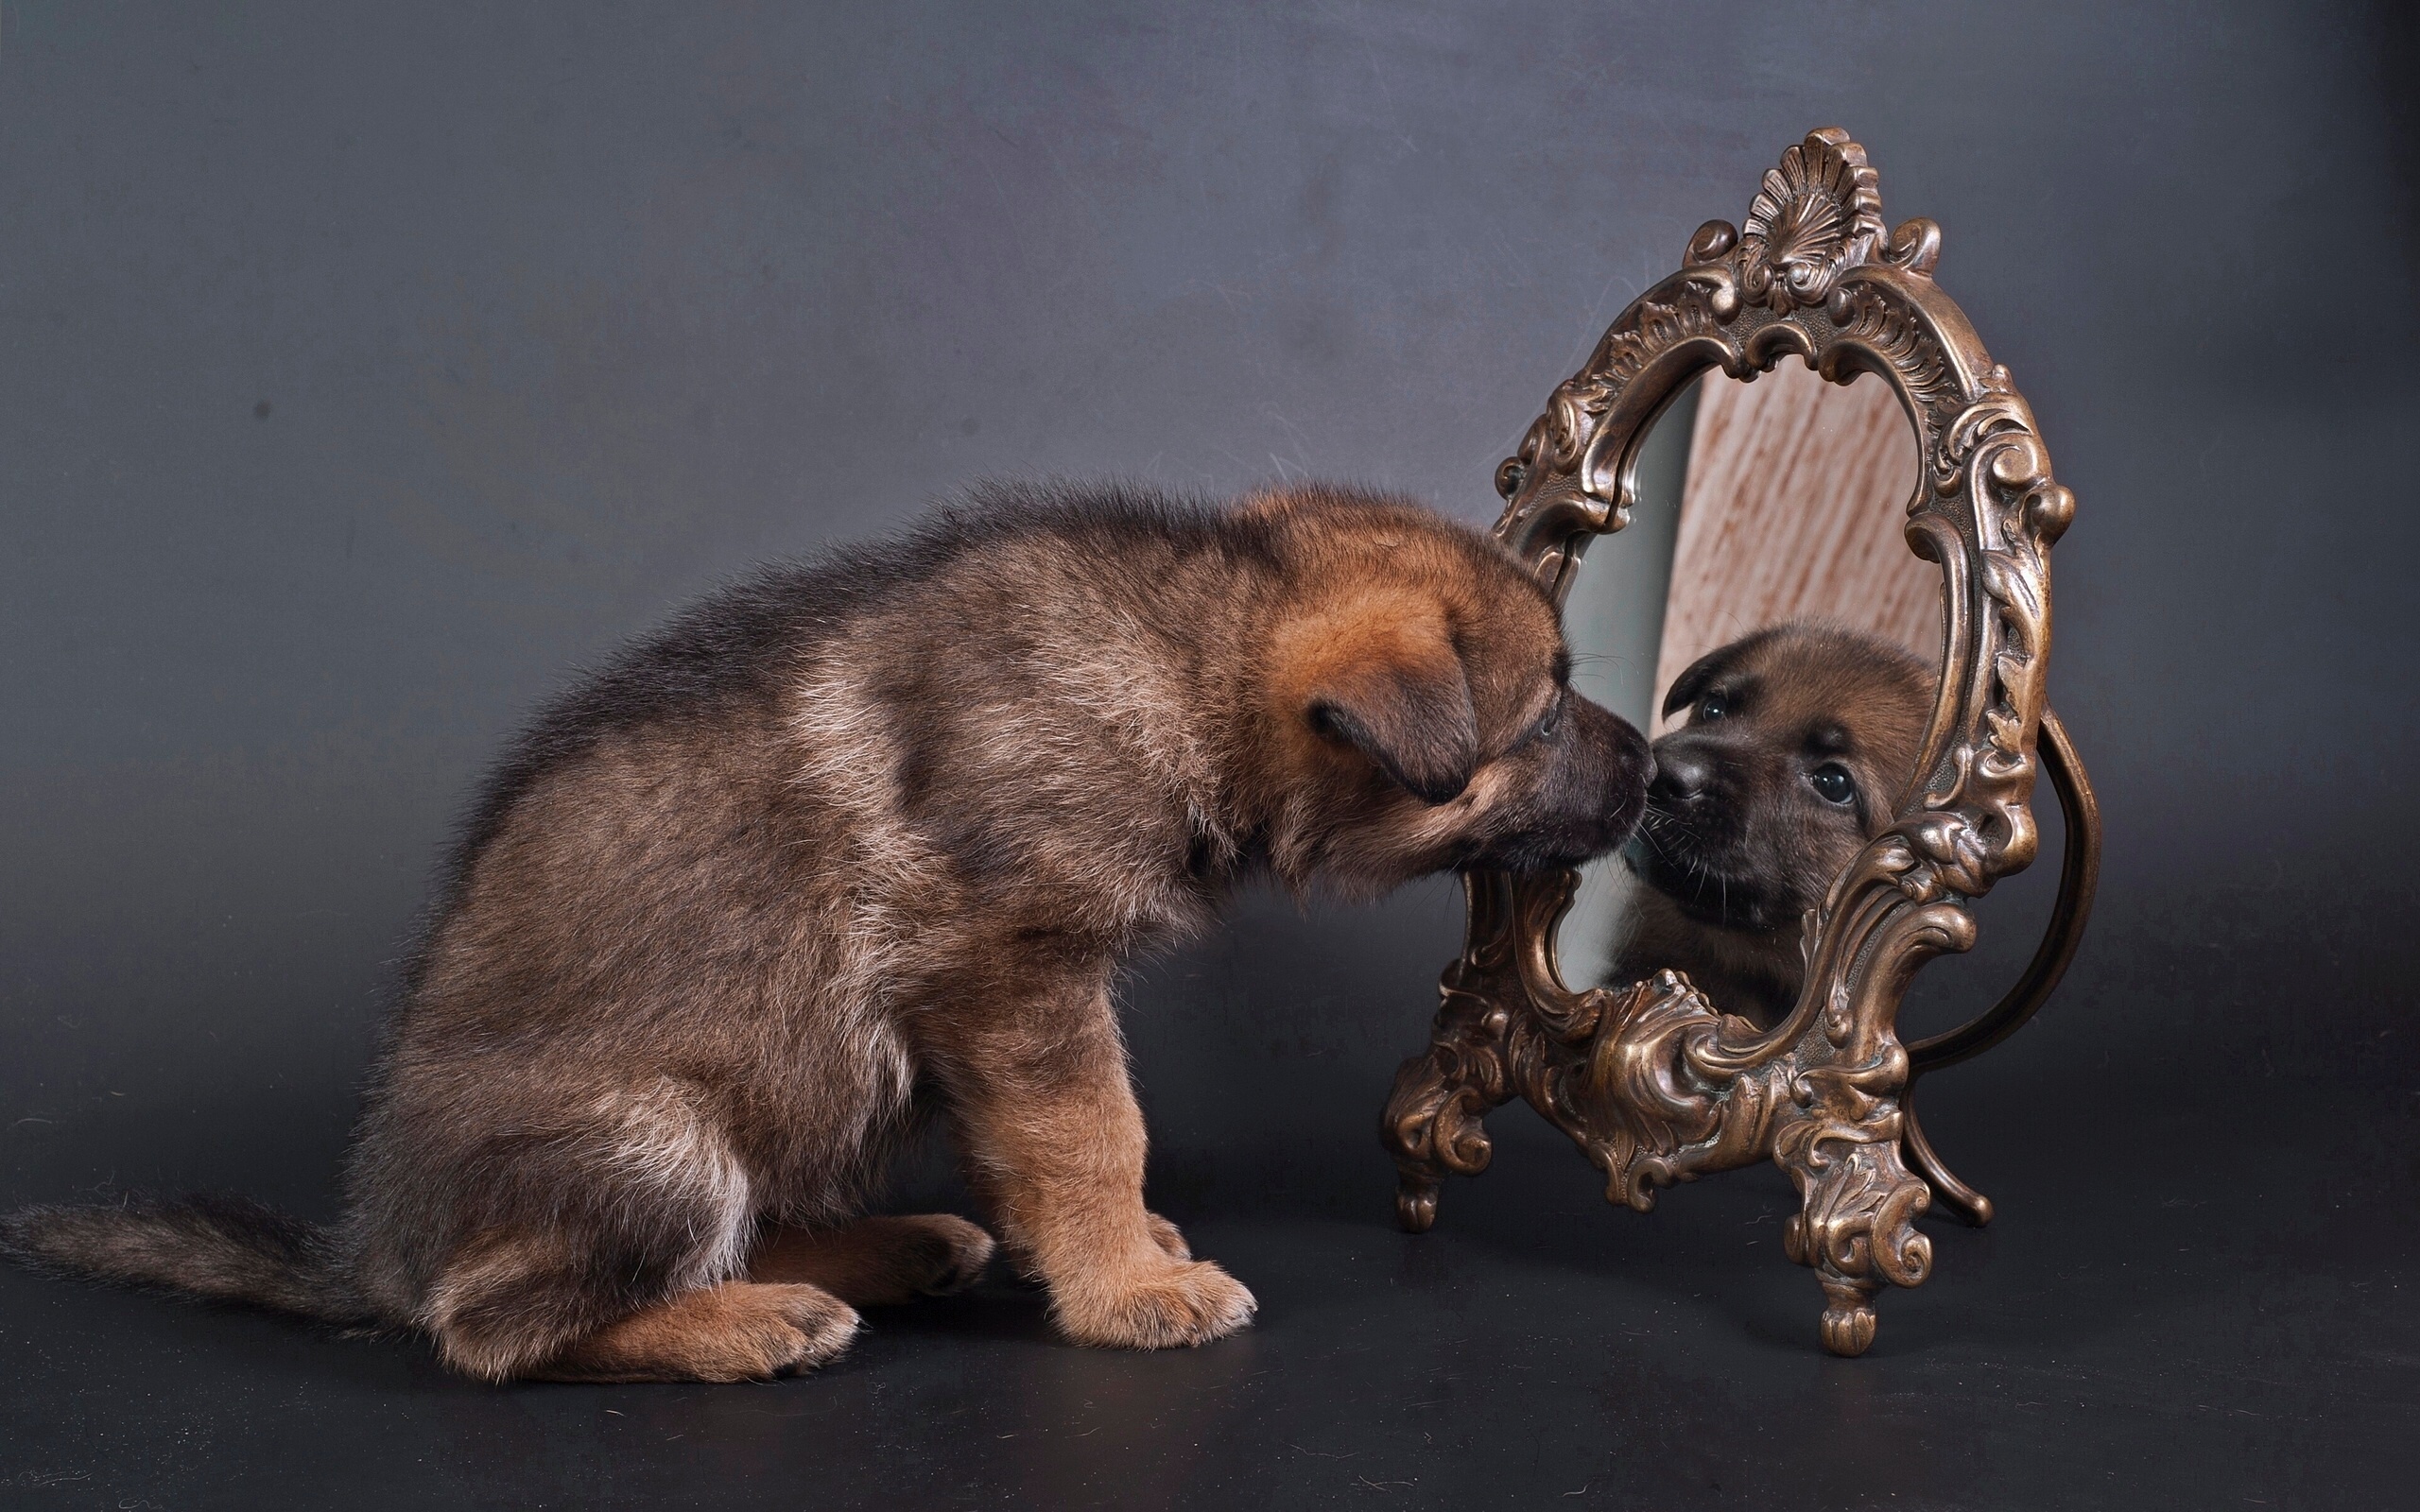 Puppy Mirror 2560x1600